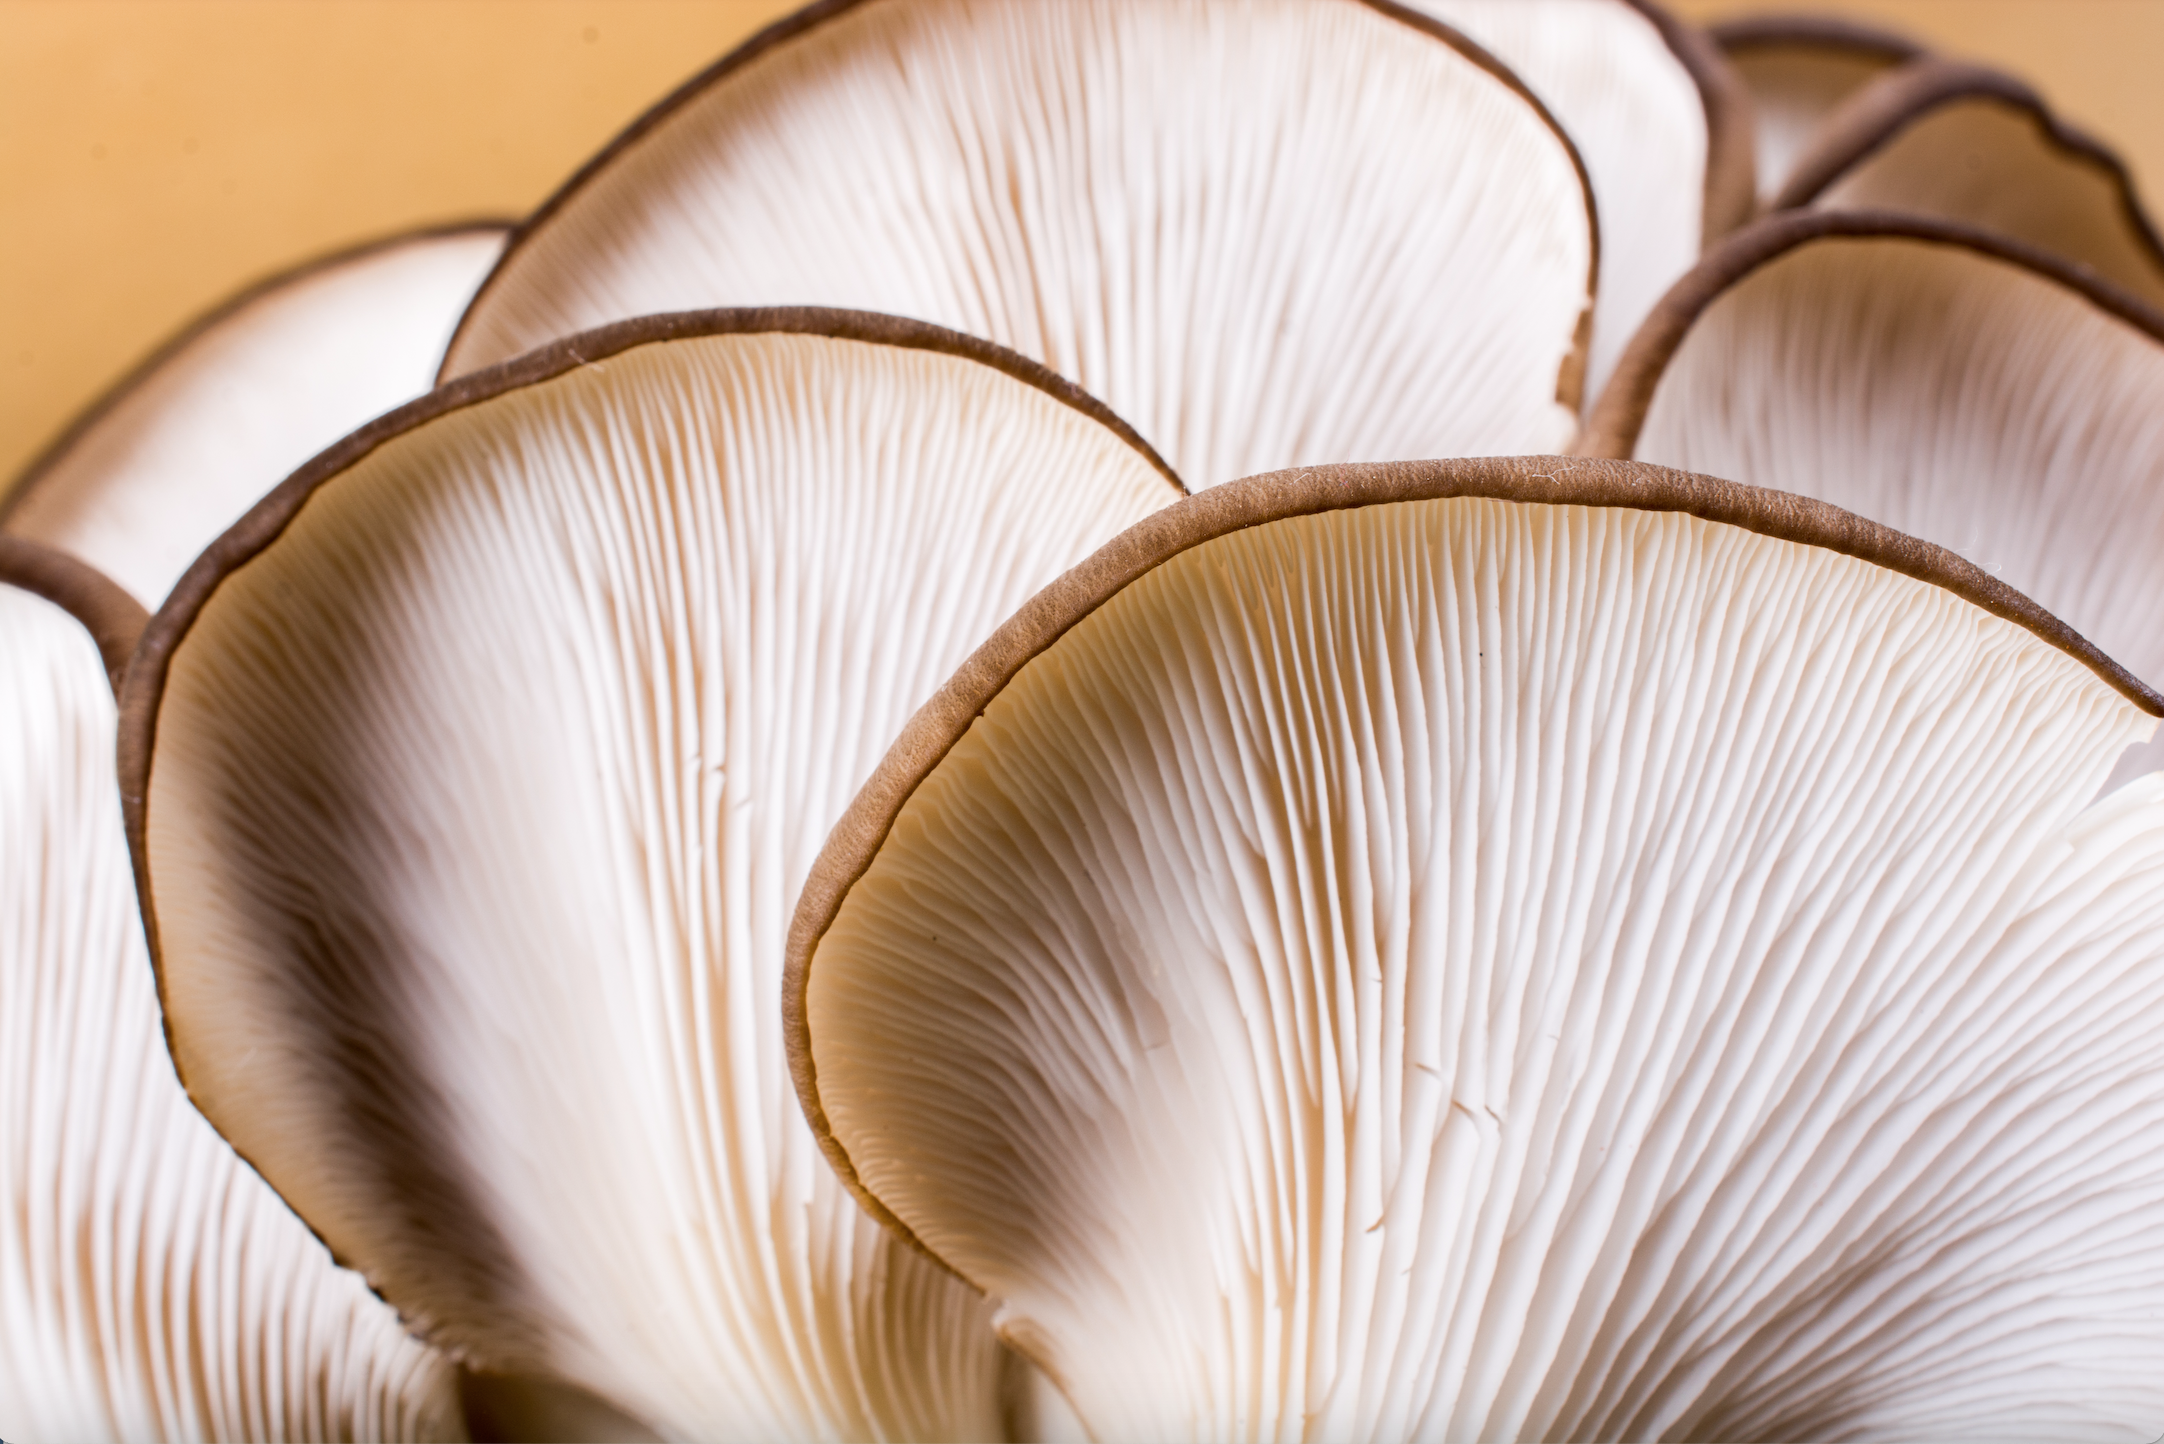 Medicinal Mushrooms & Mental Health